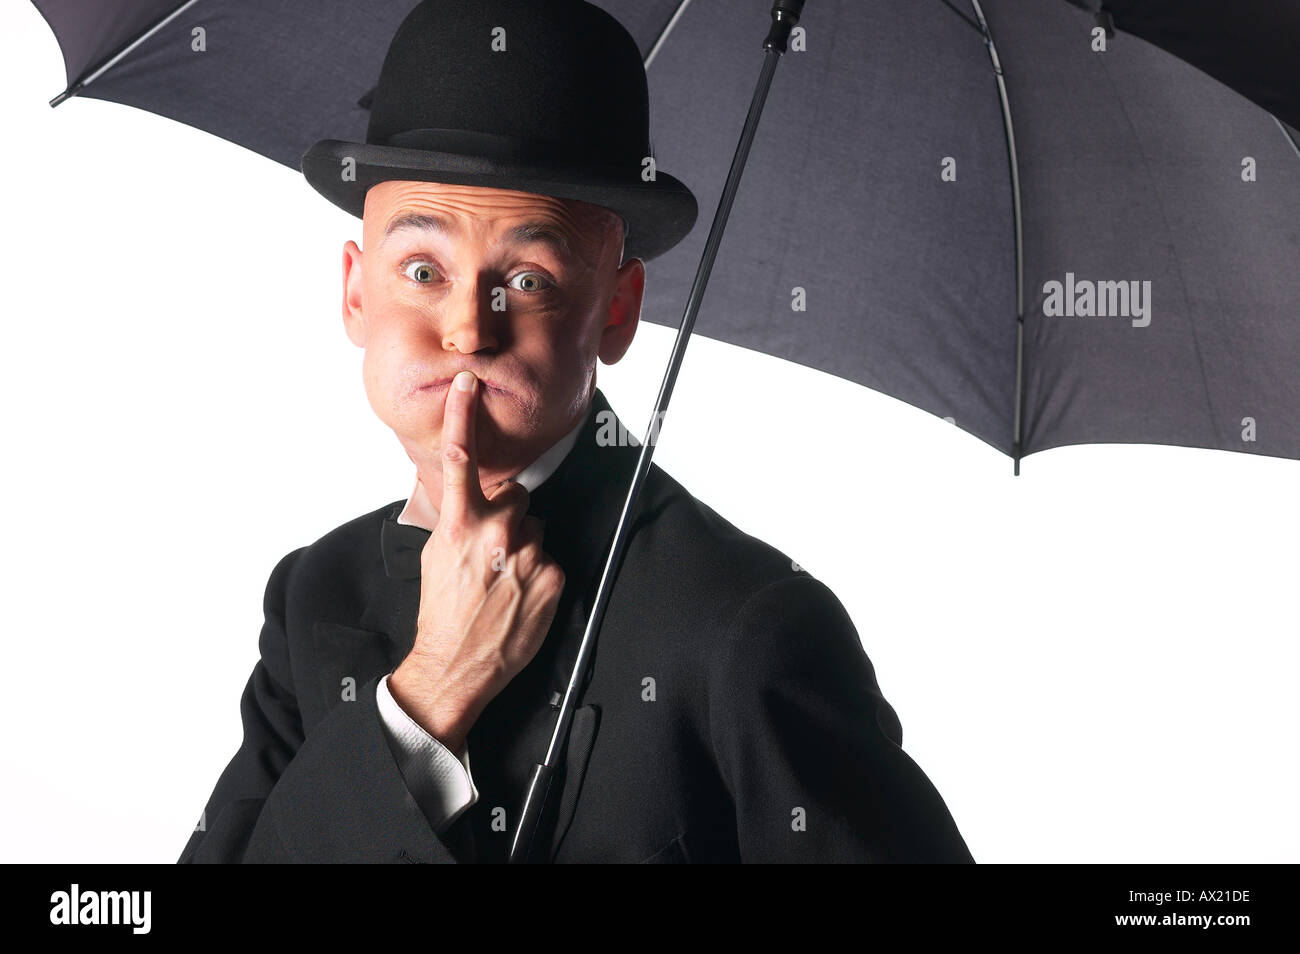 Cappello ombrello immagini e fotografie stock ad alta risoluzione - Alamy